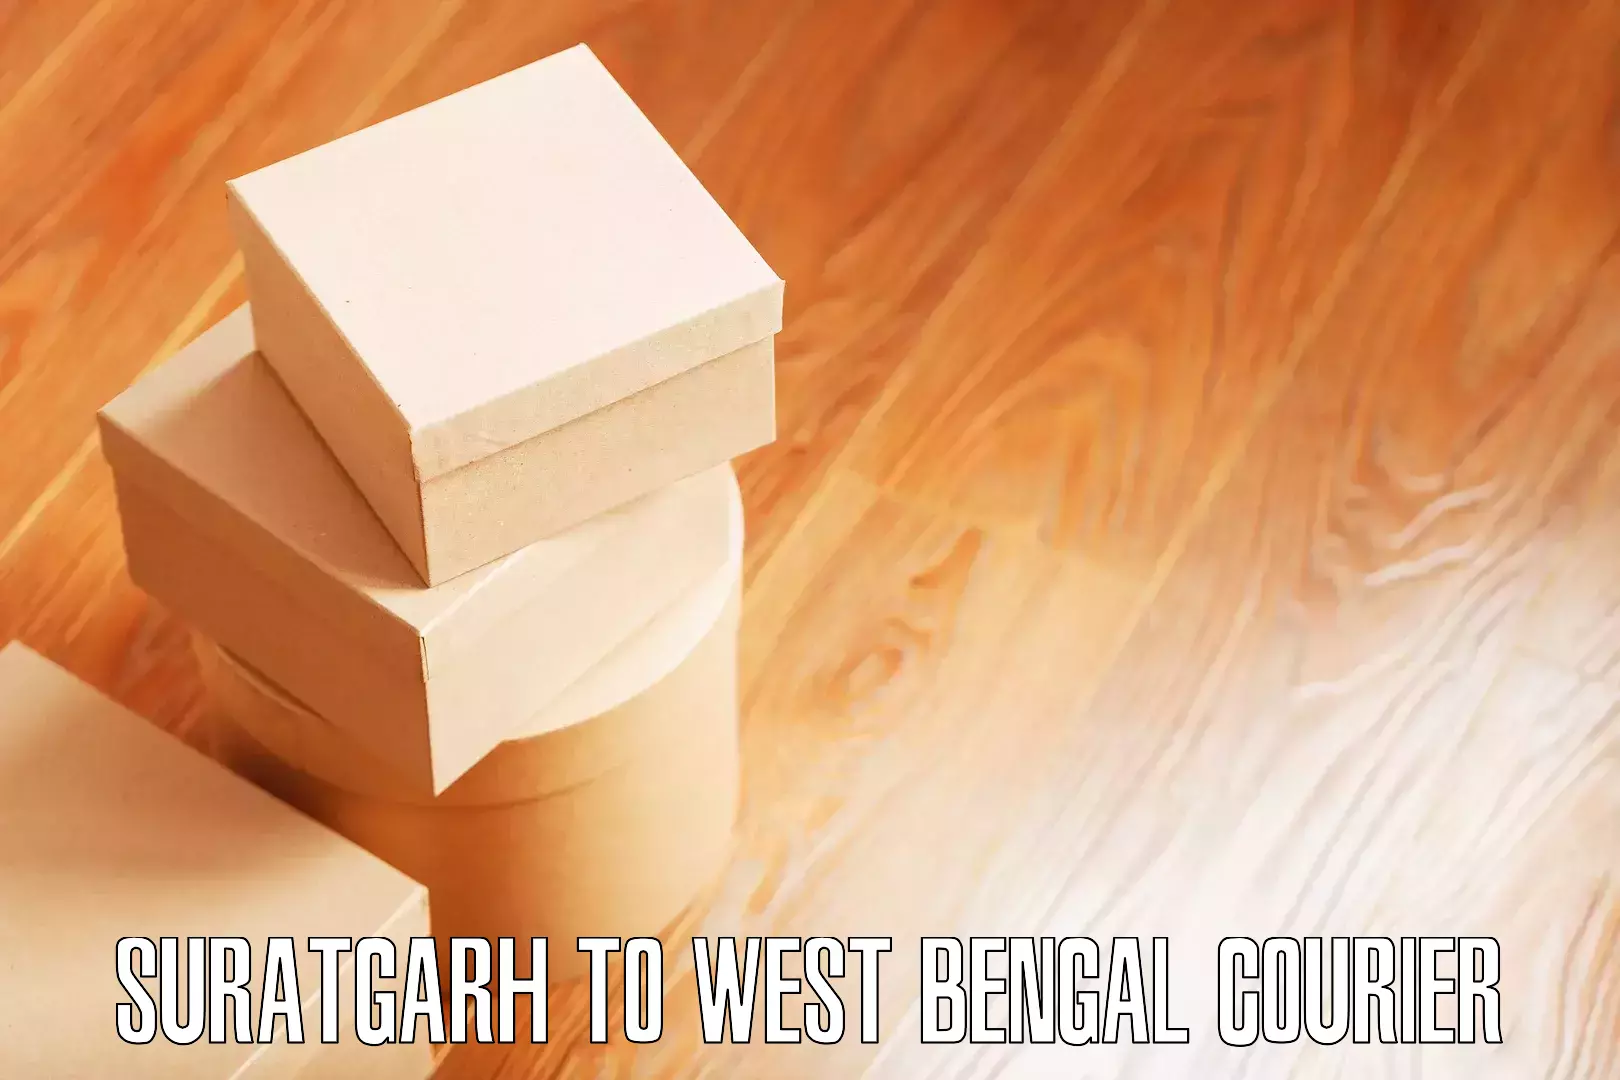 Professional furniture relocation Suratgarh to Kalchini